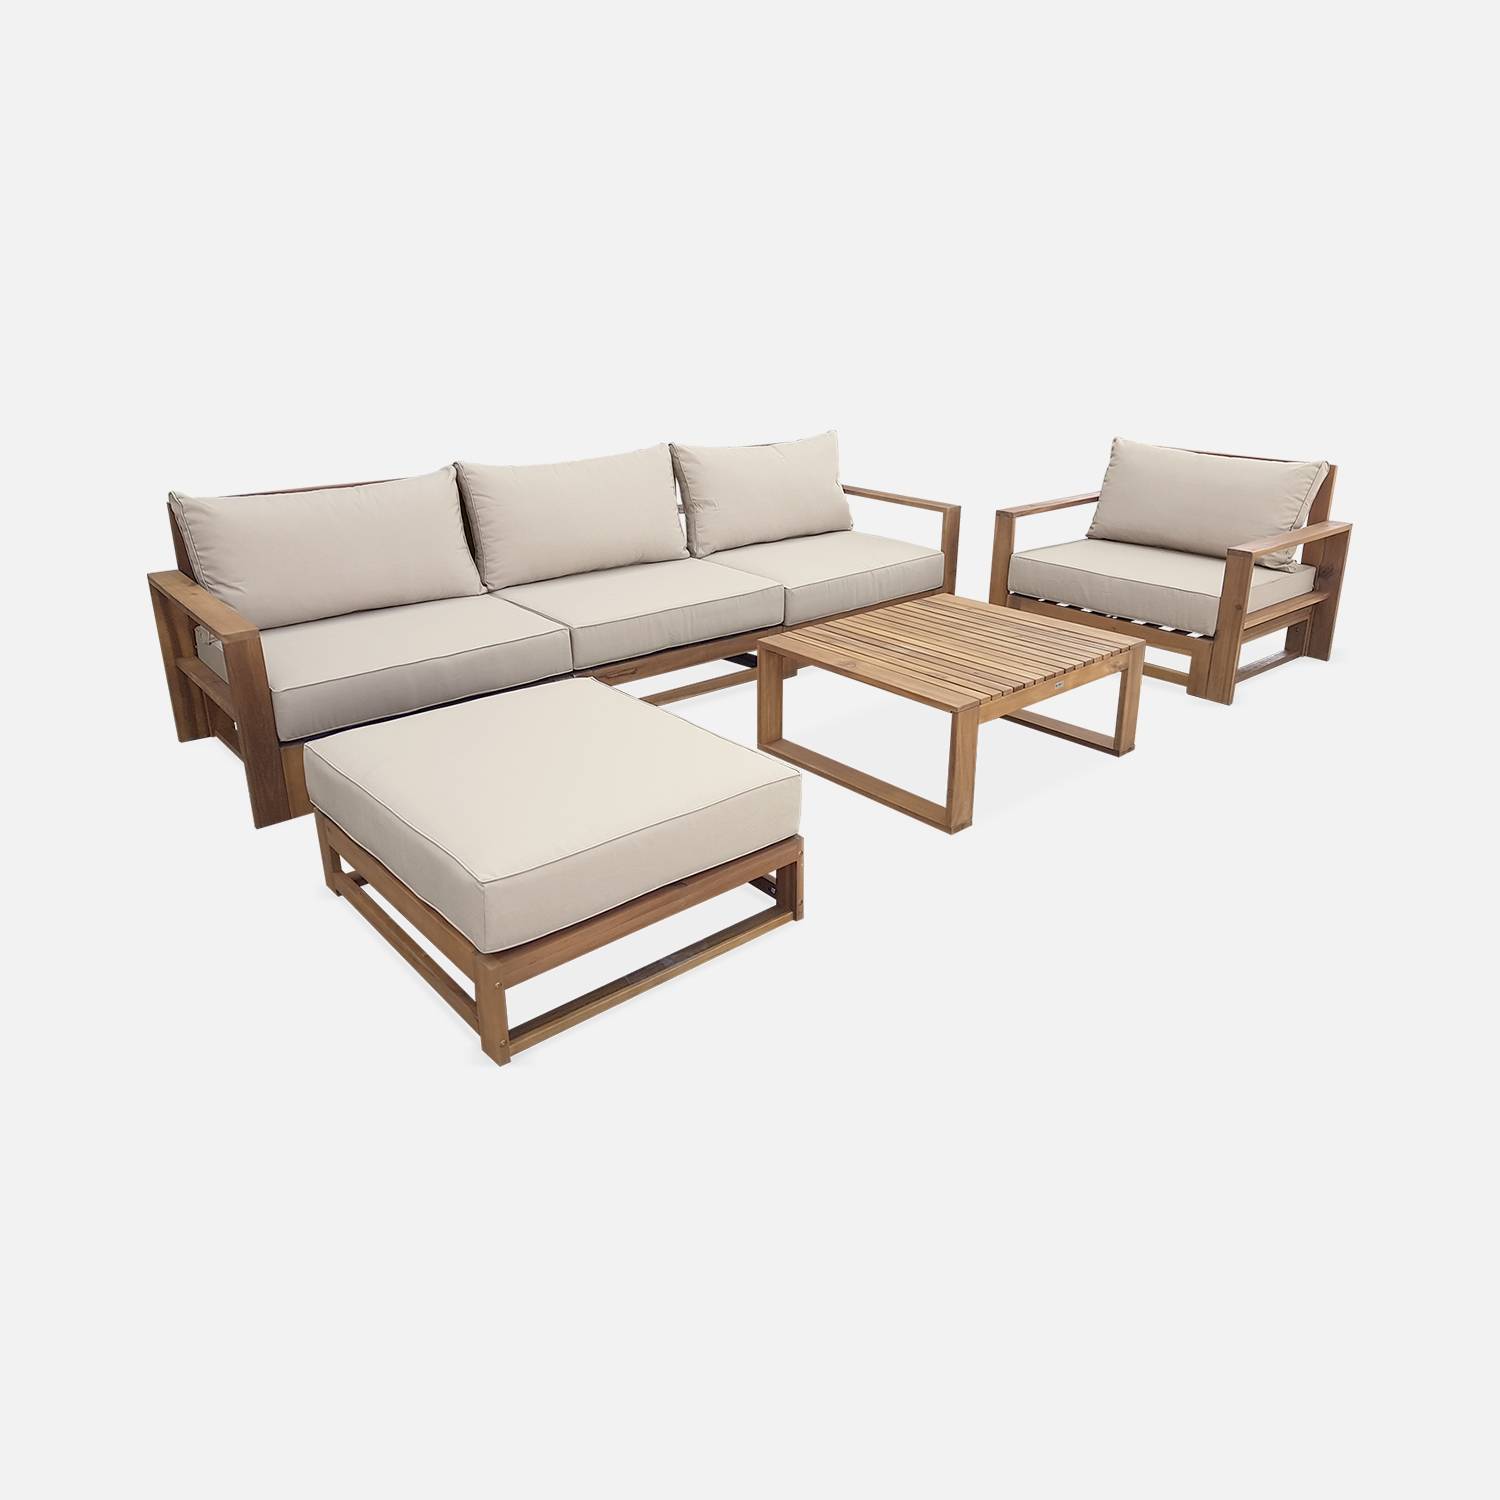 Salon de jardin en bois 5 places - Mendoza - Coussins beiges, canapé, fauteuils et table basse en acacia | sweeek